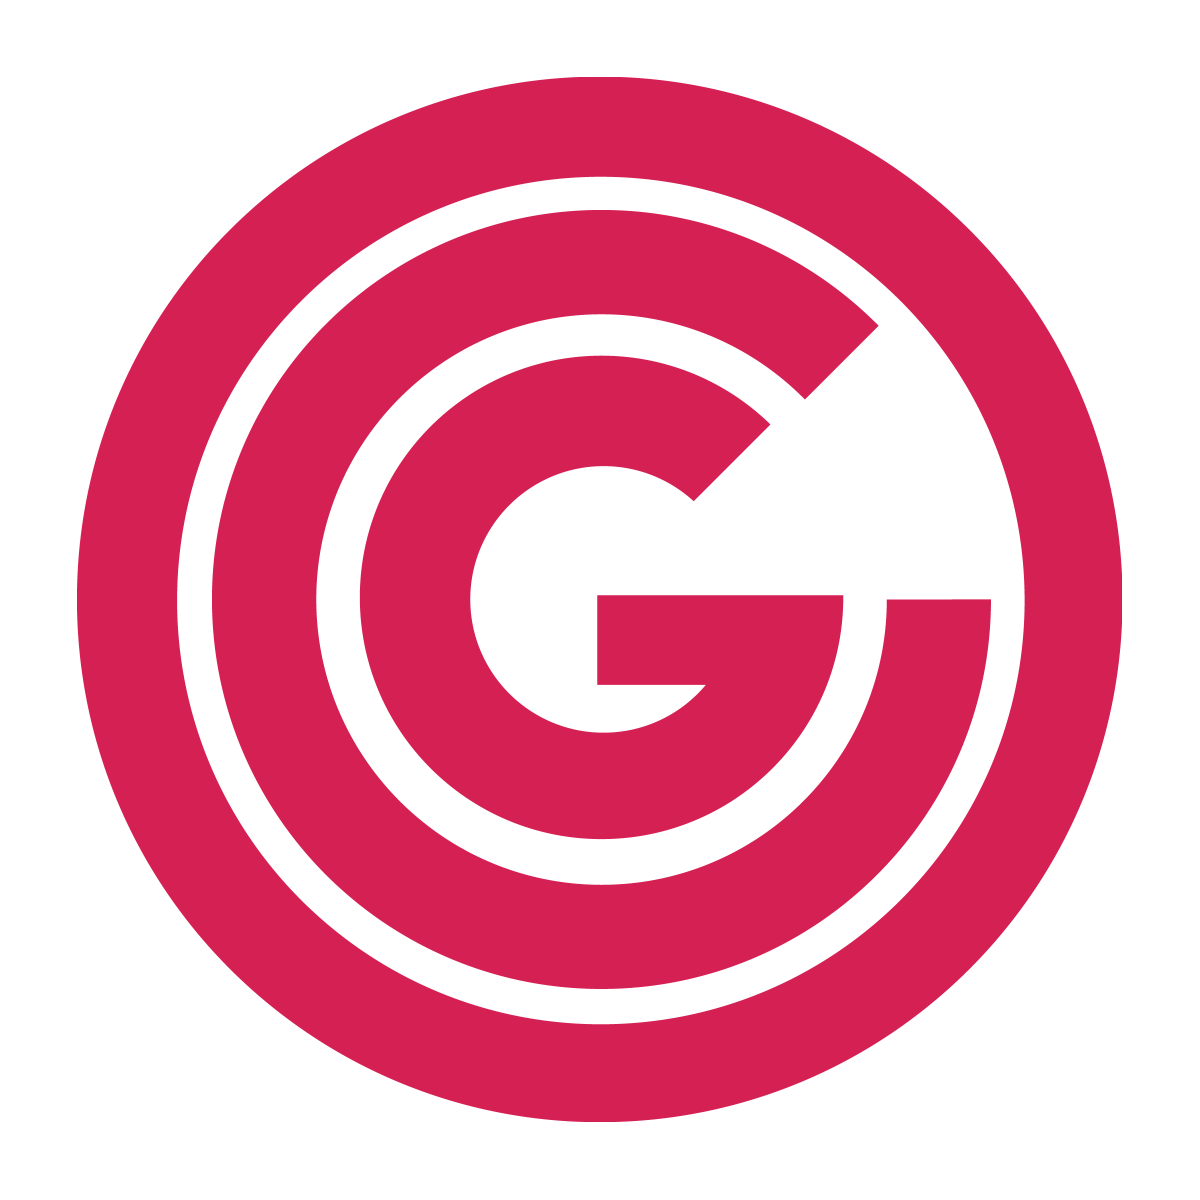 OCG Logo ohne Text